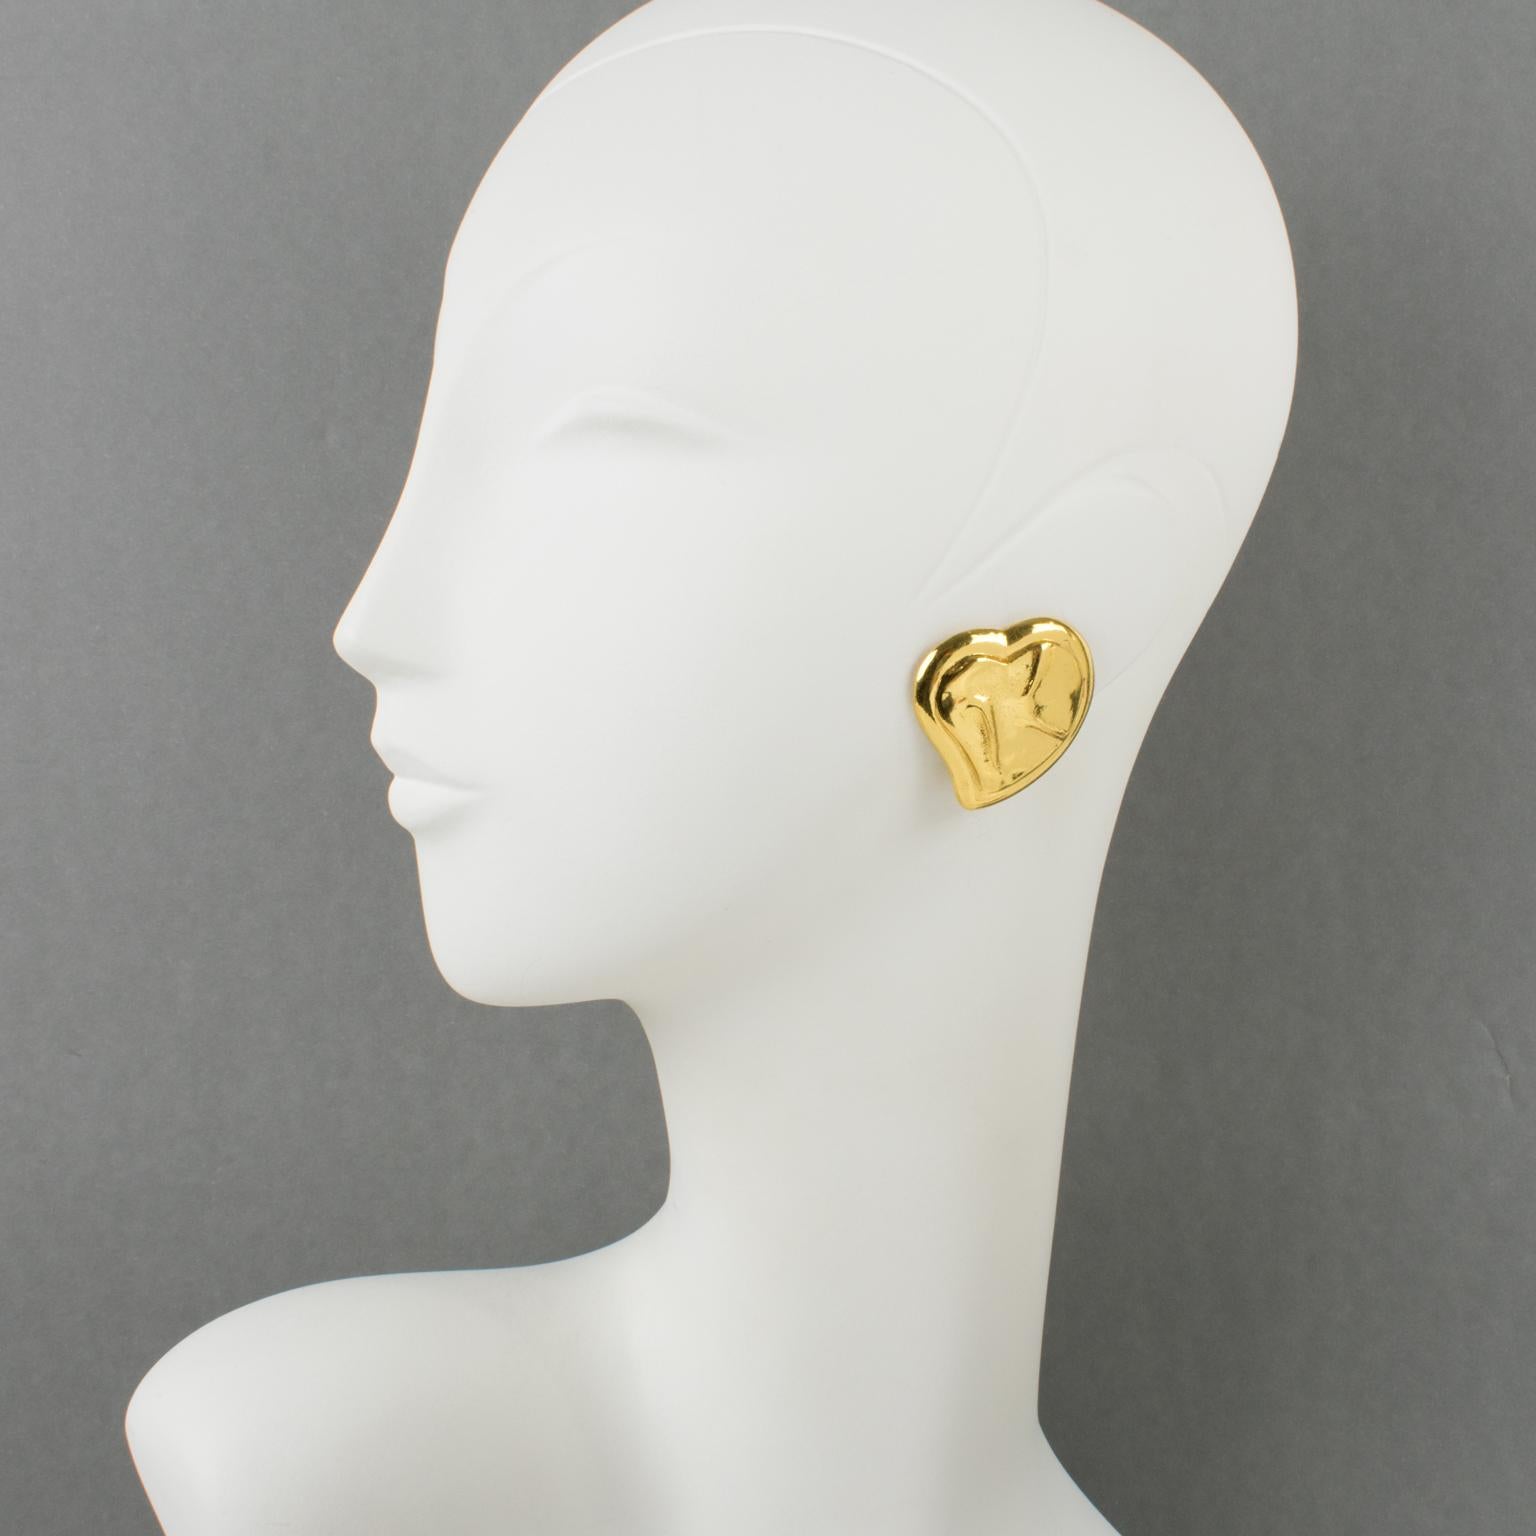 Ces ravissantes boucles d'oreilles clipsables Yves Saint Laurent Paris présentent une forme romantique de cœur dimensionnel sculpté en métal doré brillant. Ils sont signés au dos avec le logo YSL percé sur le clip et la marque Made in France gravée